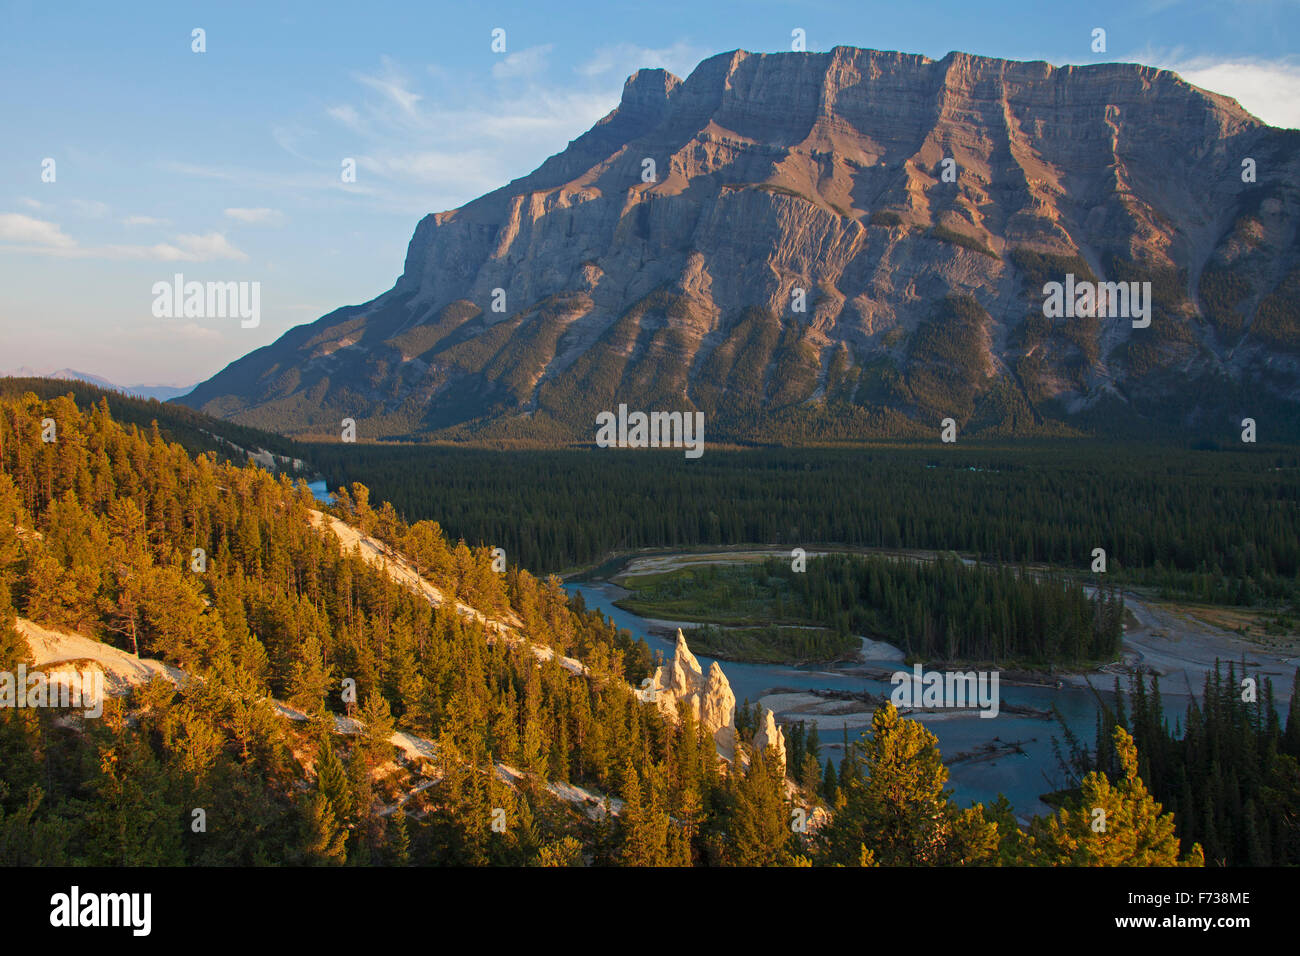 Pyramides de la terre / cheminées dans la vallée de la Bow et le mont Rundle dans le parc national Banff, Alberta, montagnes Rocheuses, Canada Banque D'Images